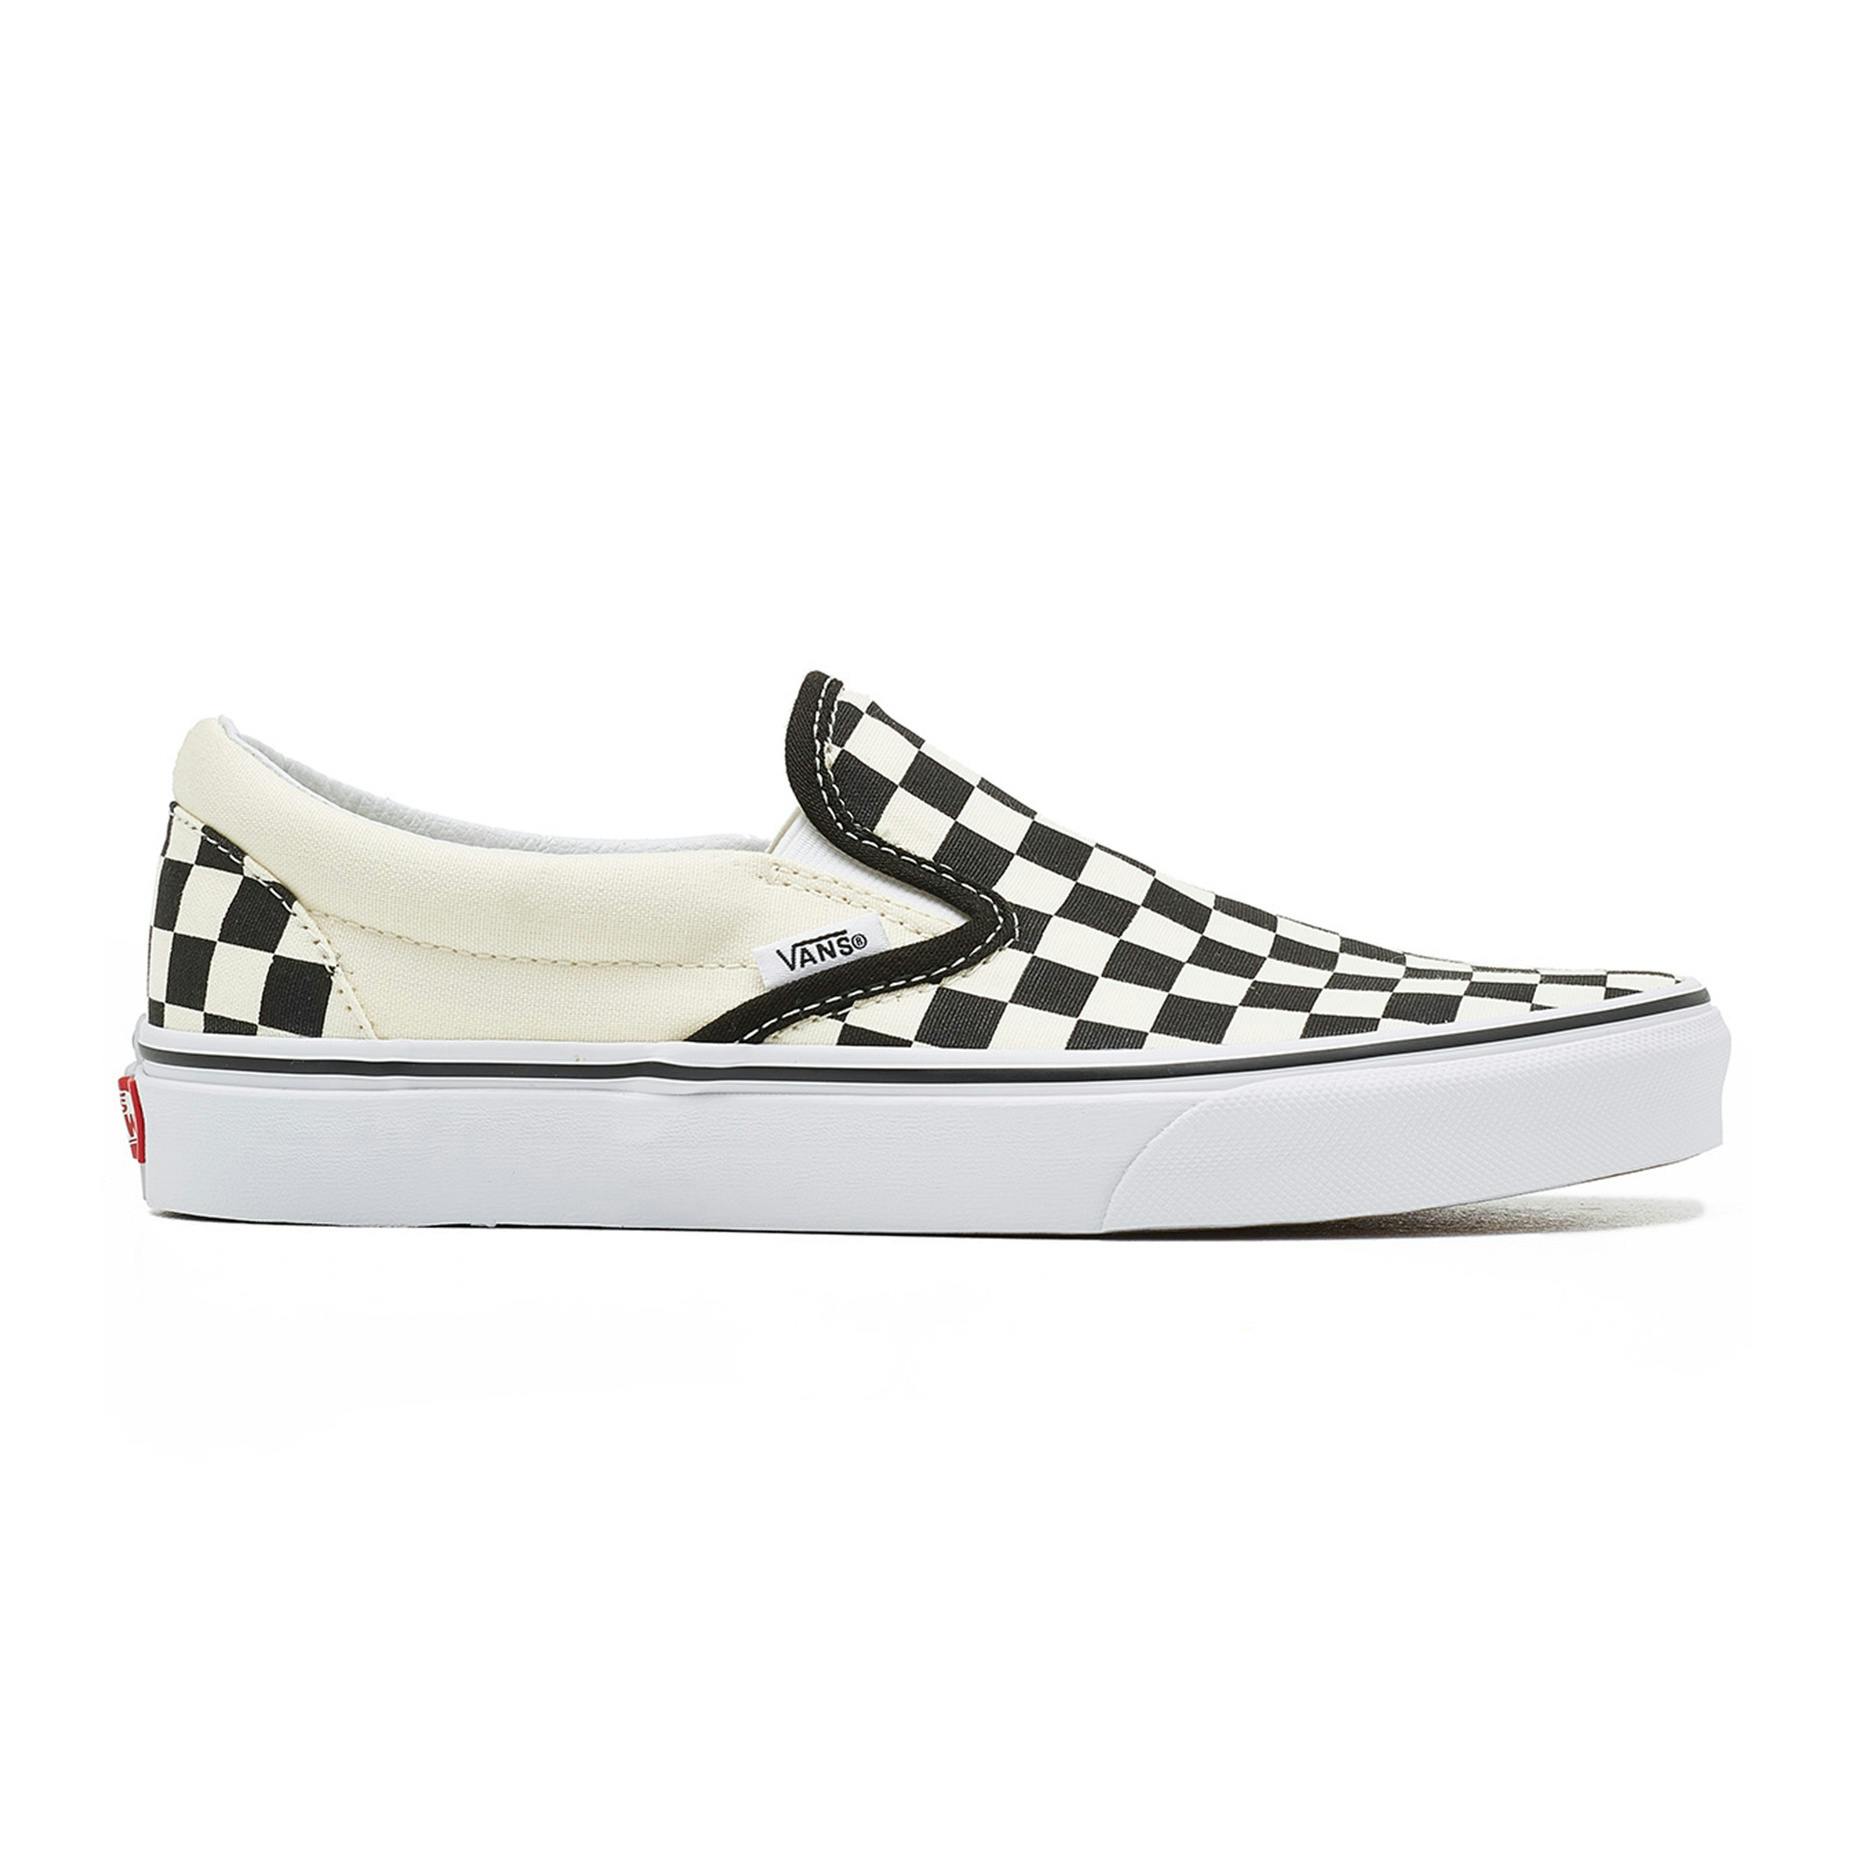 Vans Skate Shoe - Black/White | BOARDWORLD